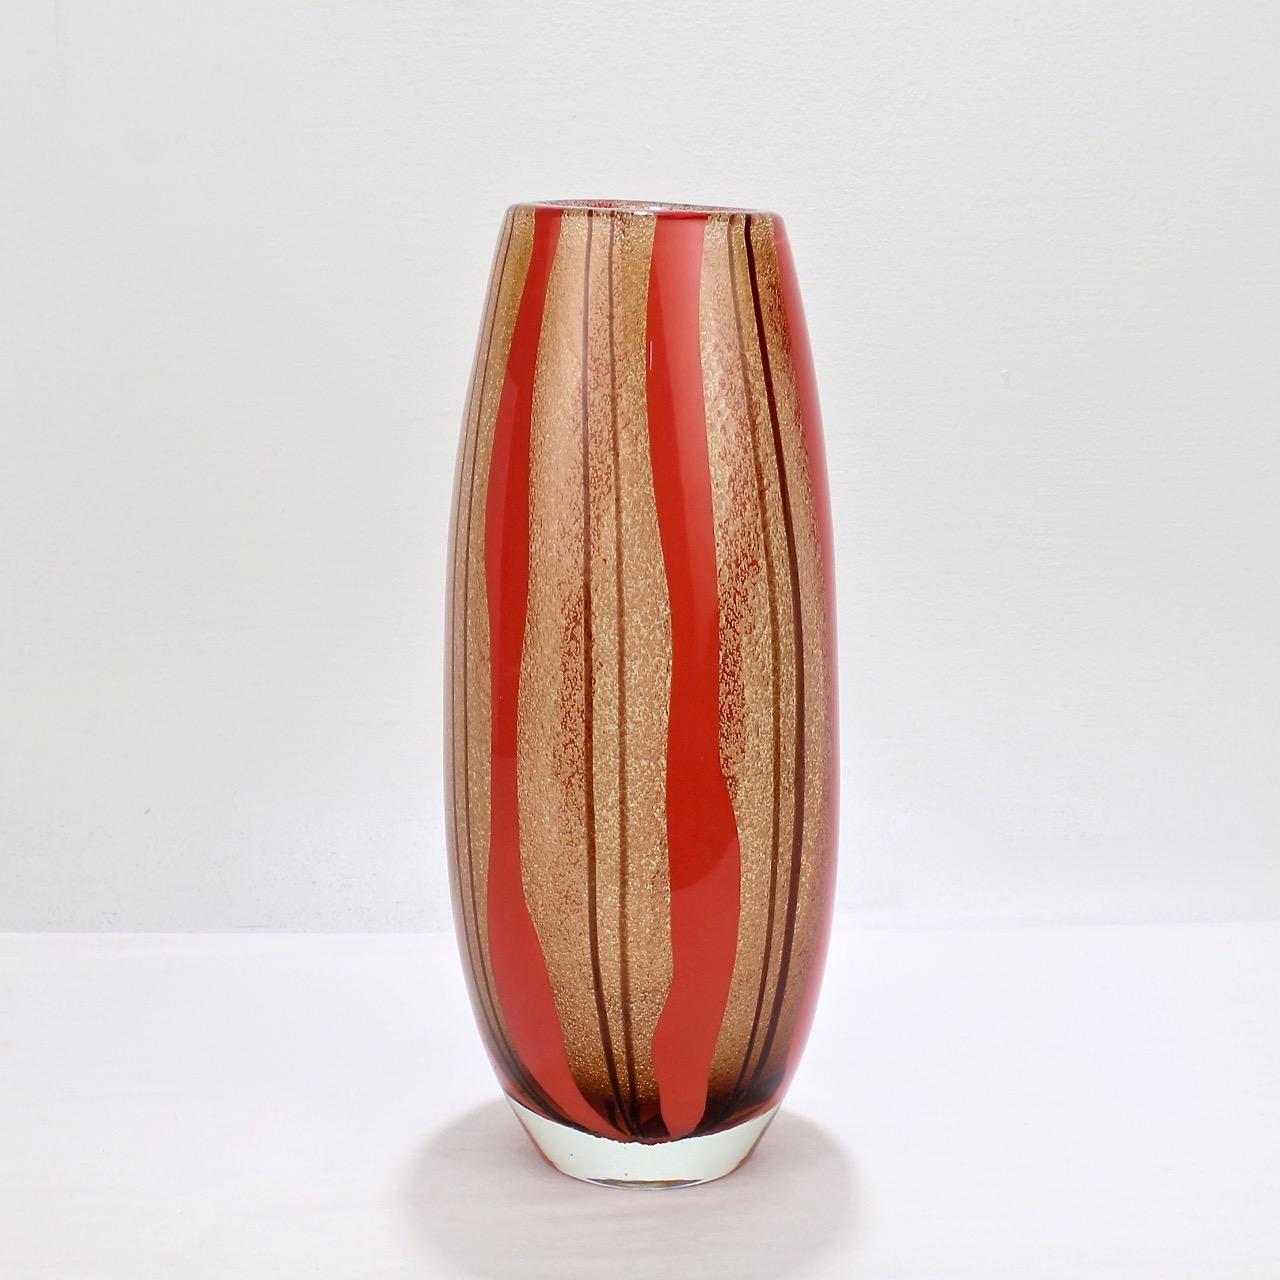 Eine gute Murano Glasvase mit roten und violetten Streifen.

Im Stil von Flavio Poli mit einem dicken Körper, Bullicine und 